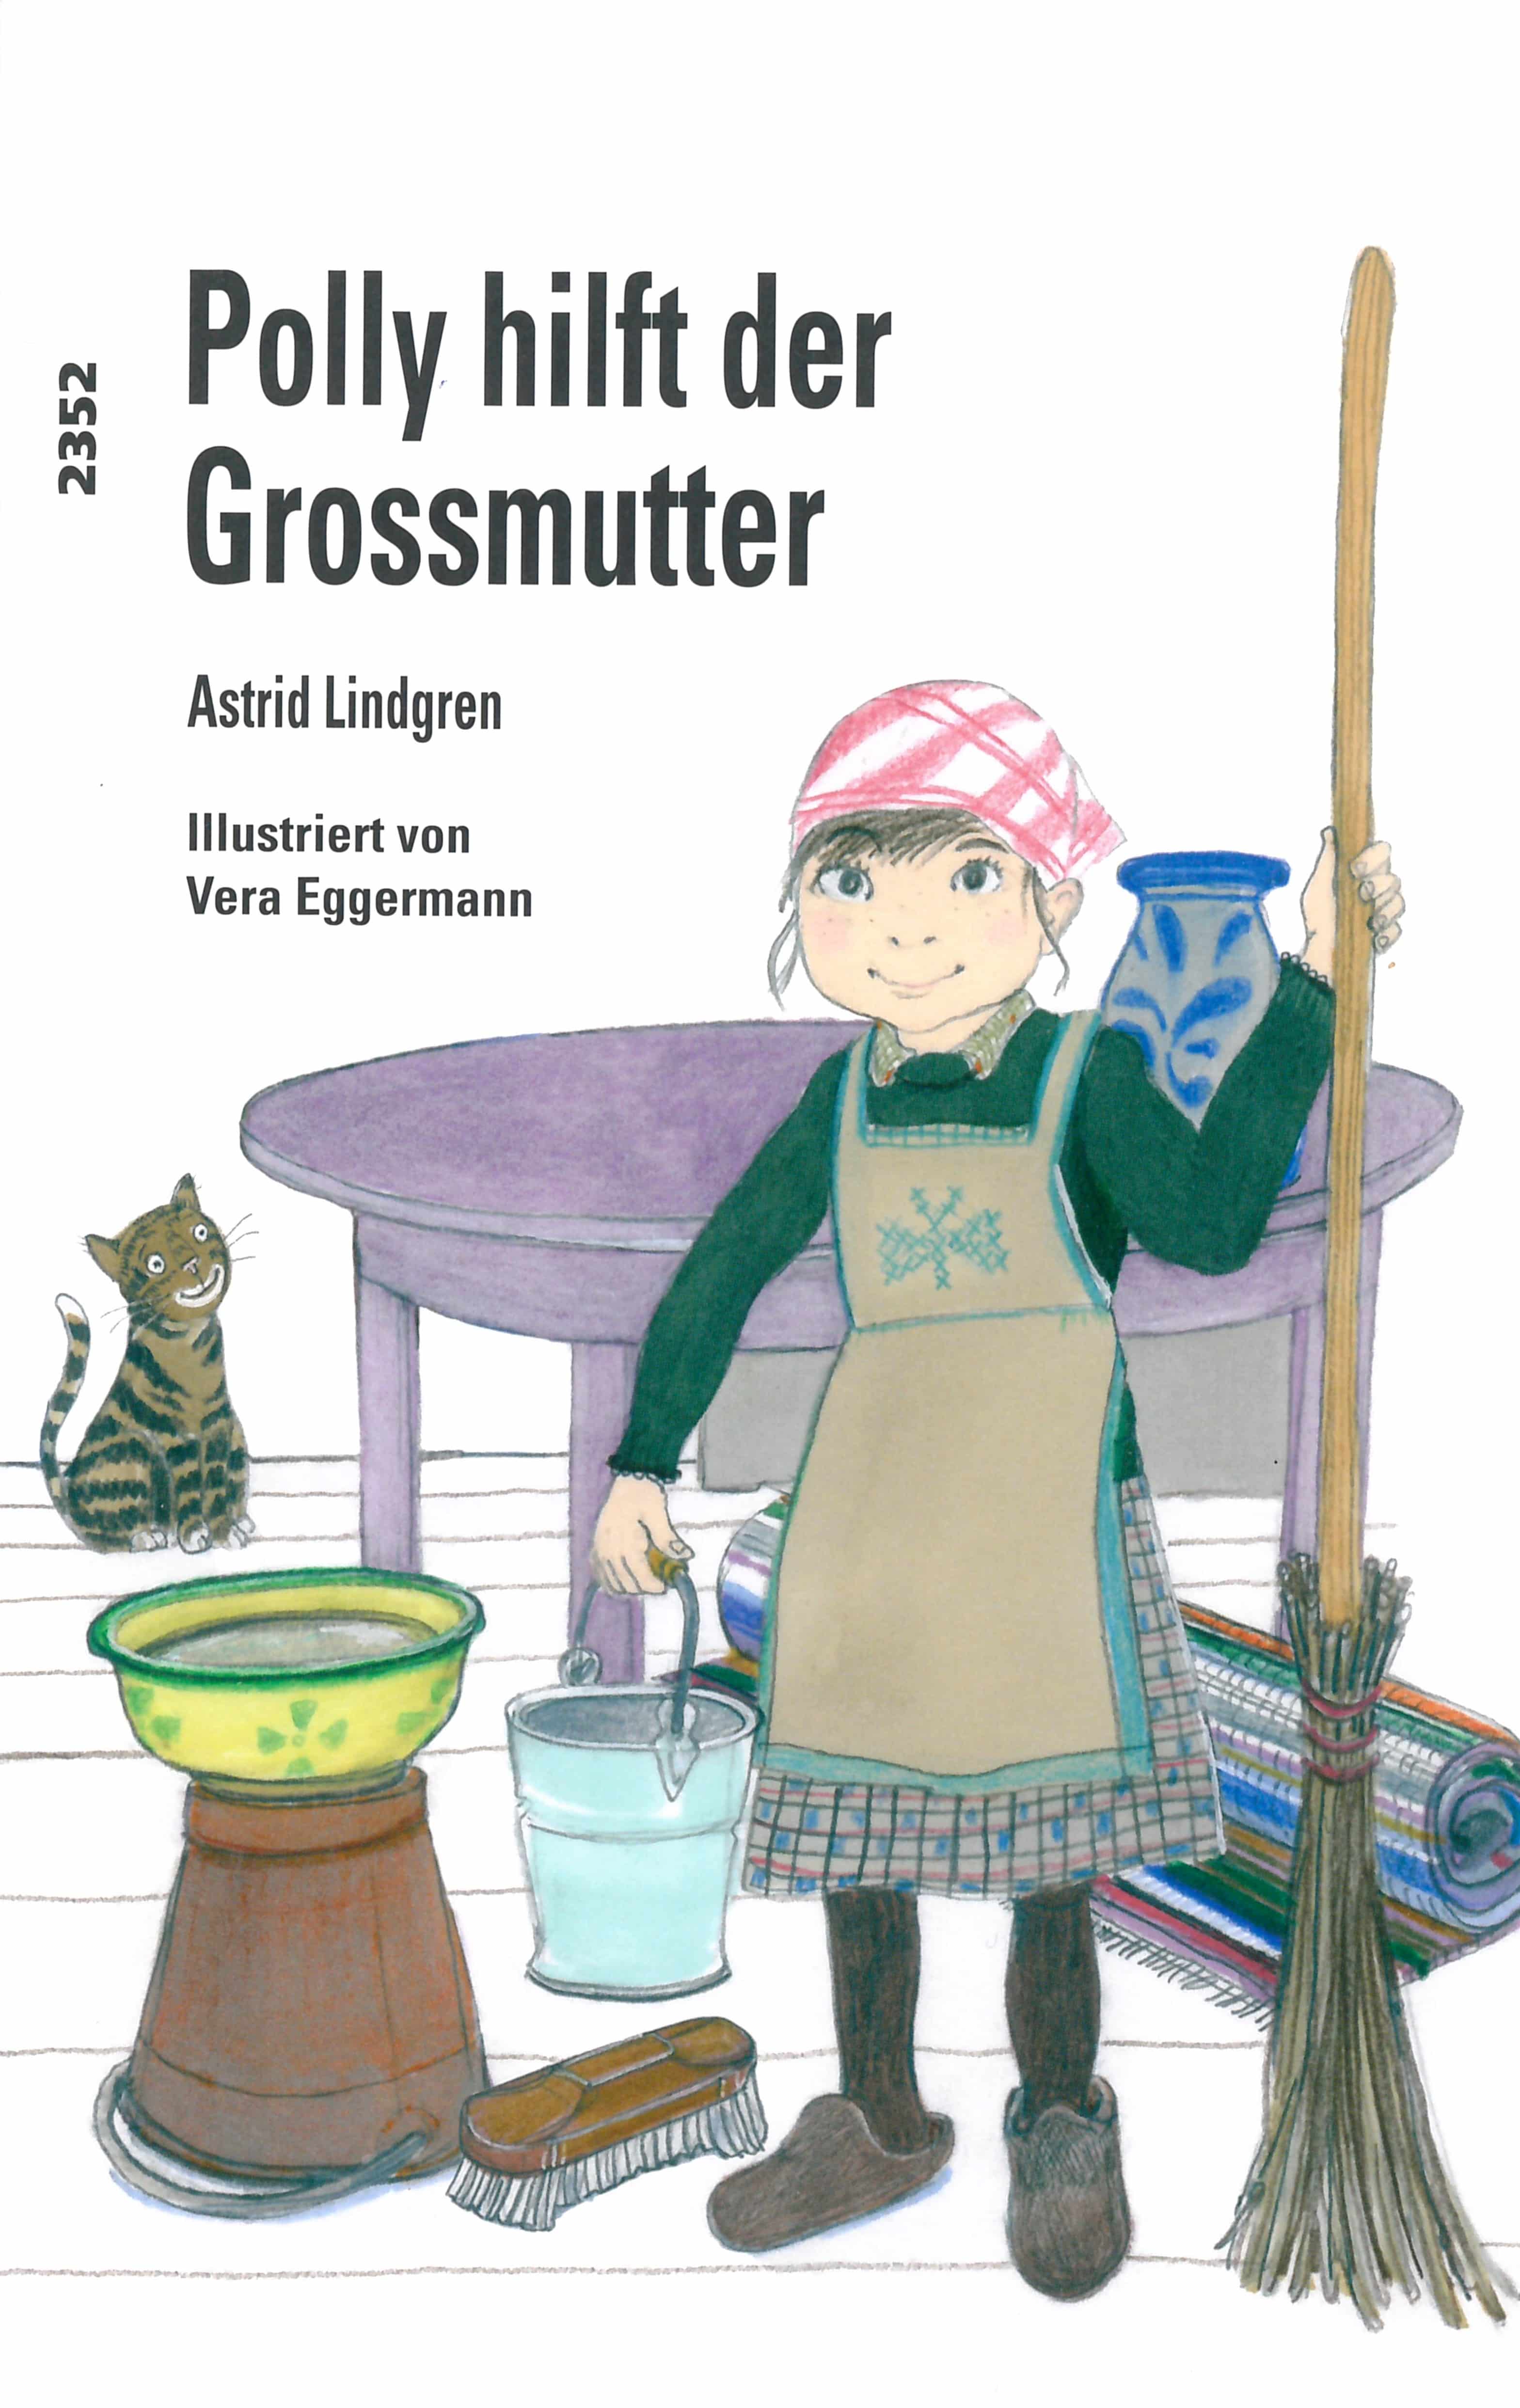 Polly hilft der Grossmutter, ein Kinderbuch von Astrid Lindgren, Illustration von Vera Eggermann, SJW Verlag, Weihnachtsgeschichte